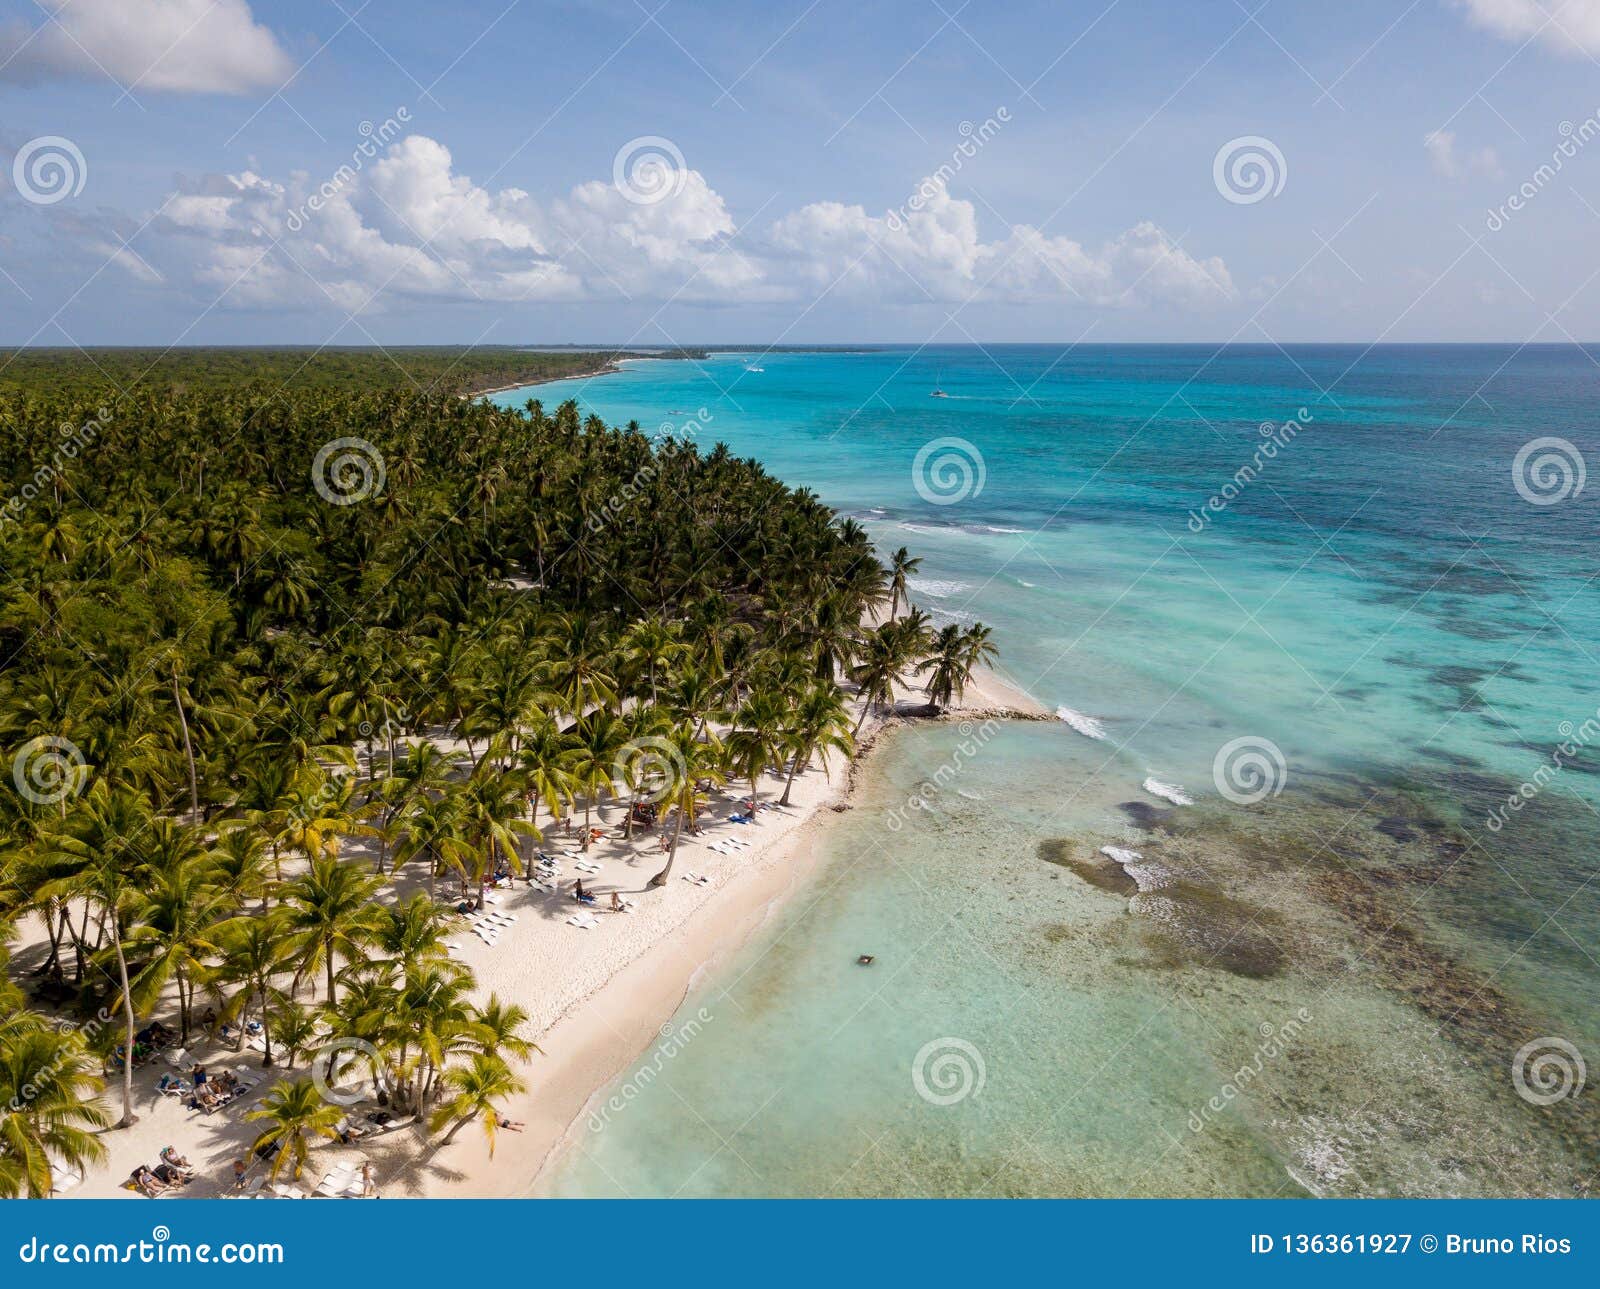 isla saone beach in punta cana, dominican republic